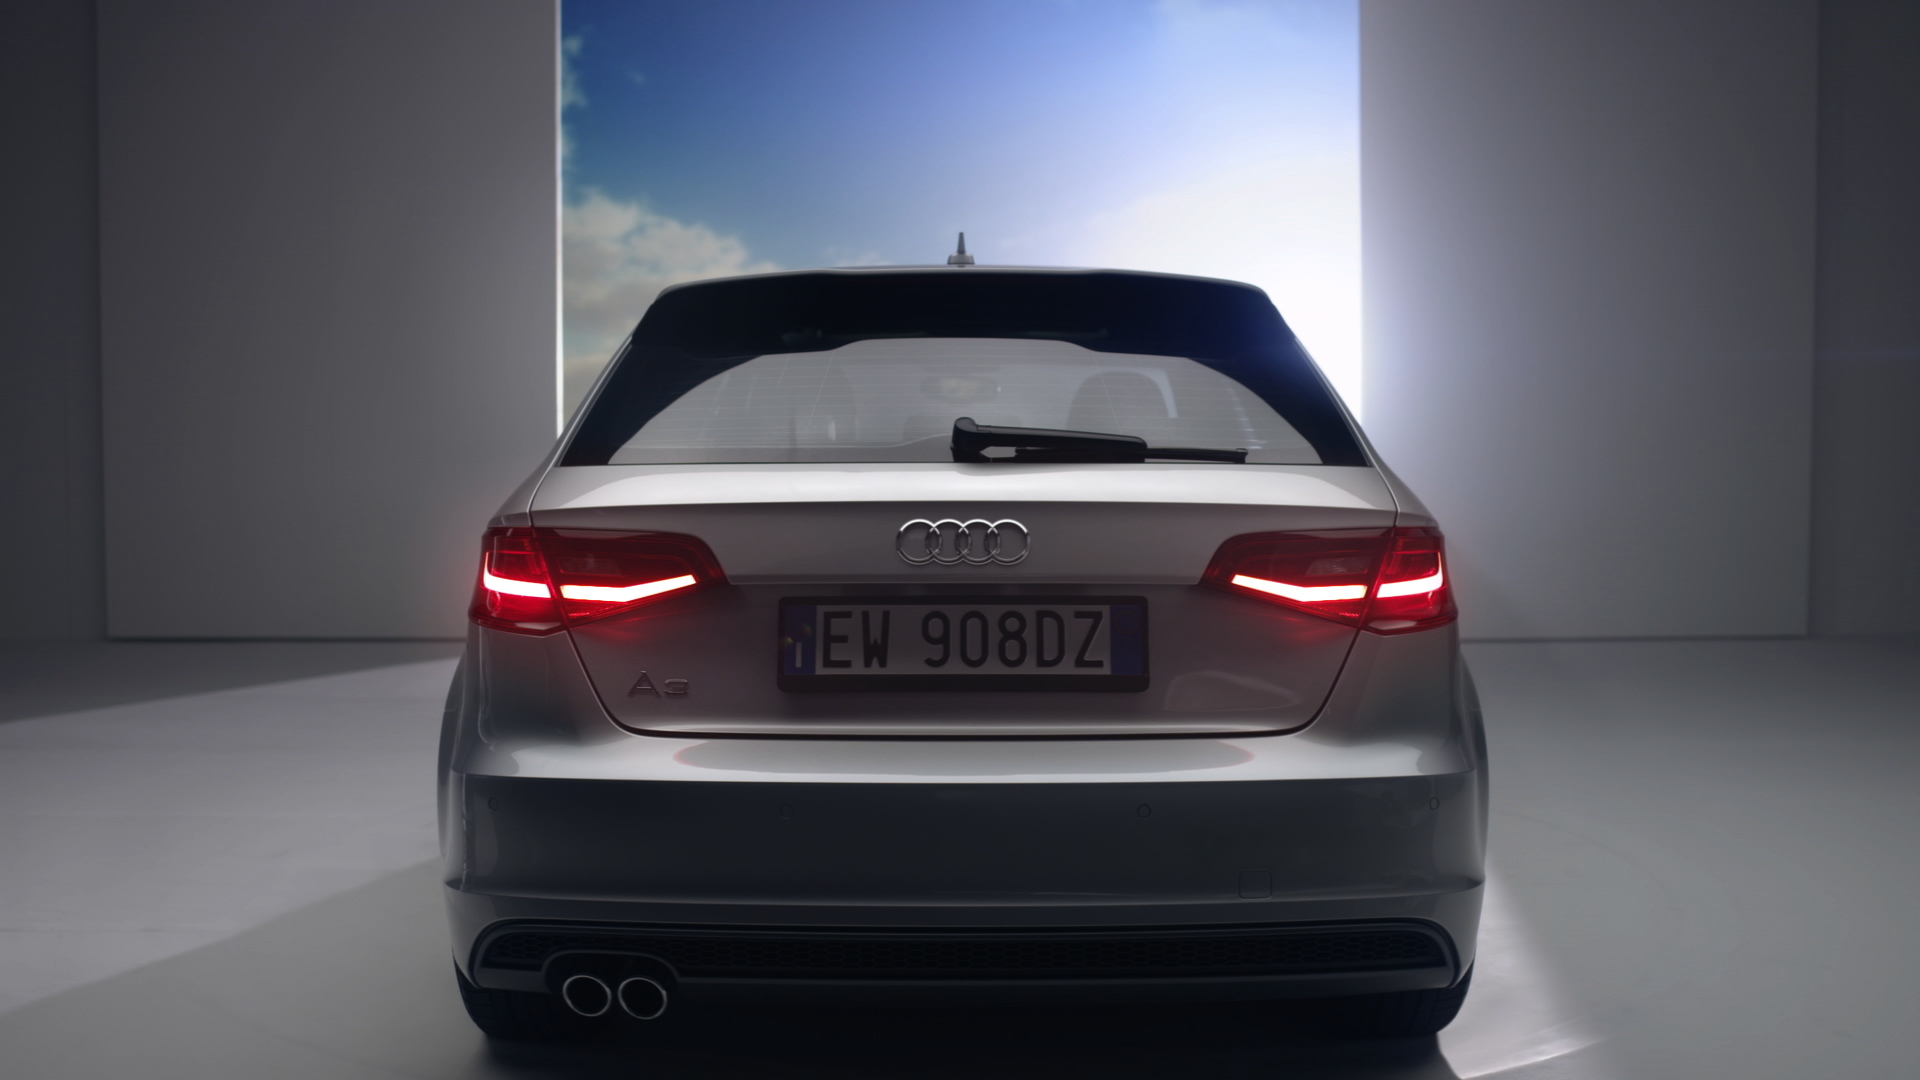  Effetti speciali per il nuovo spot della Audi A3 Sportback